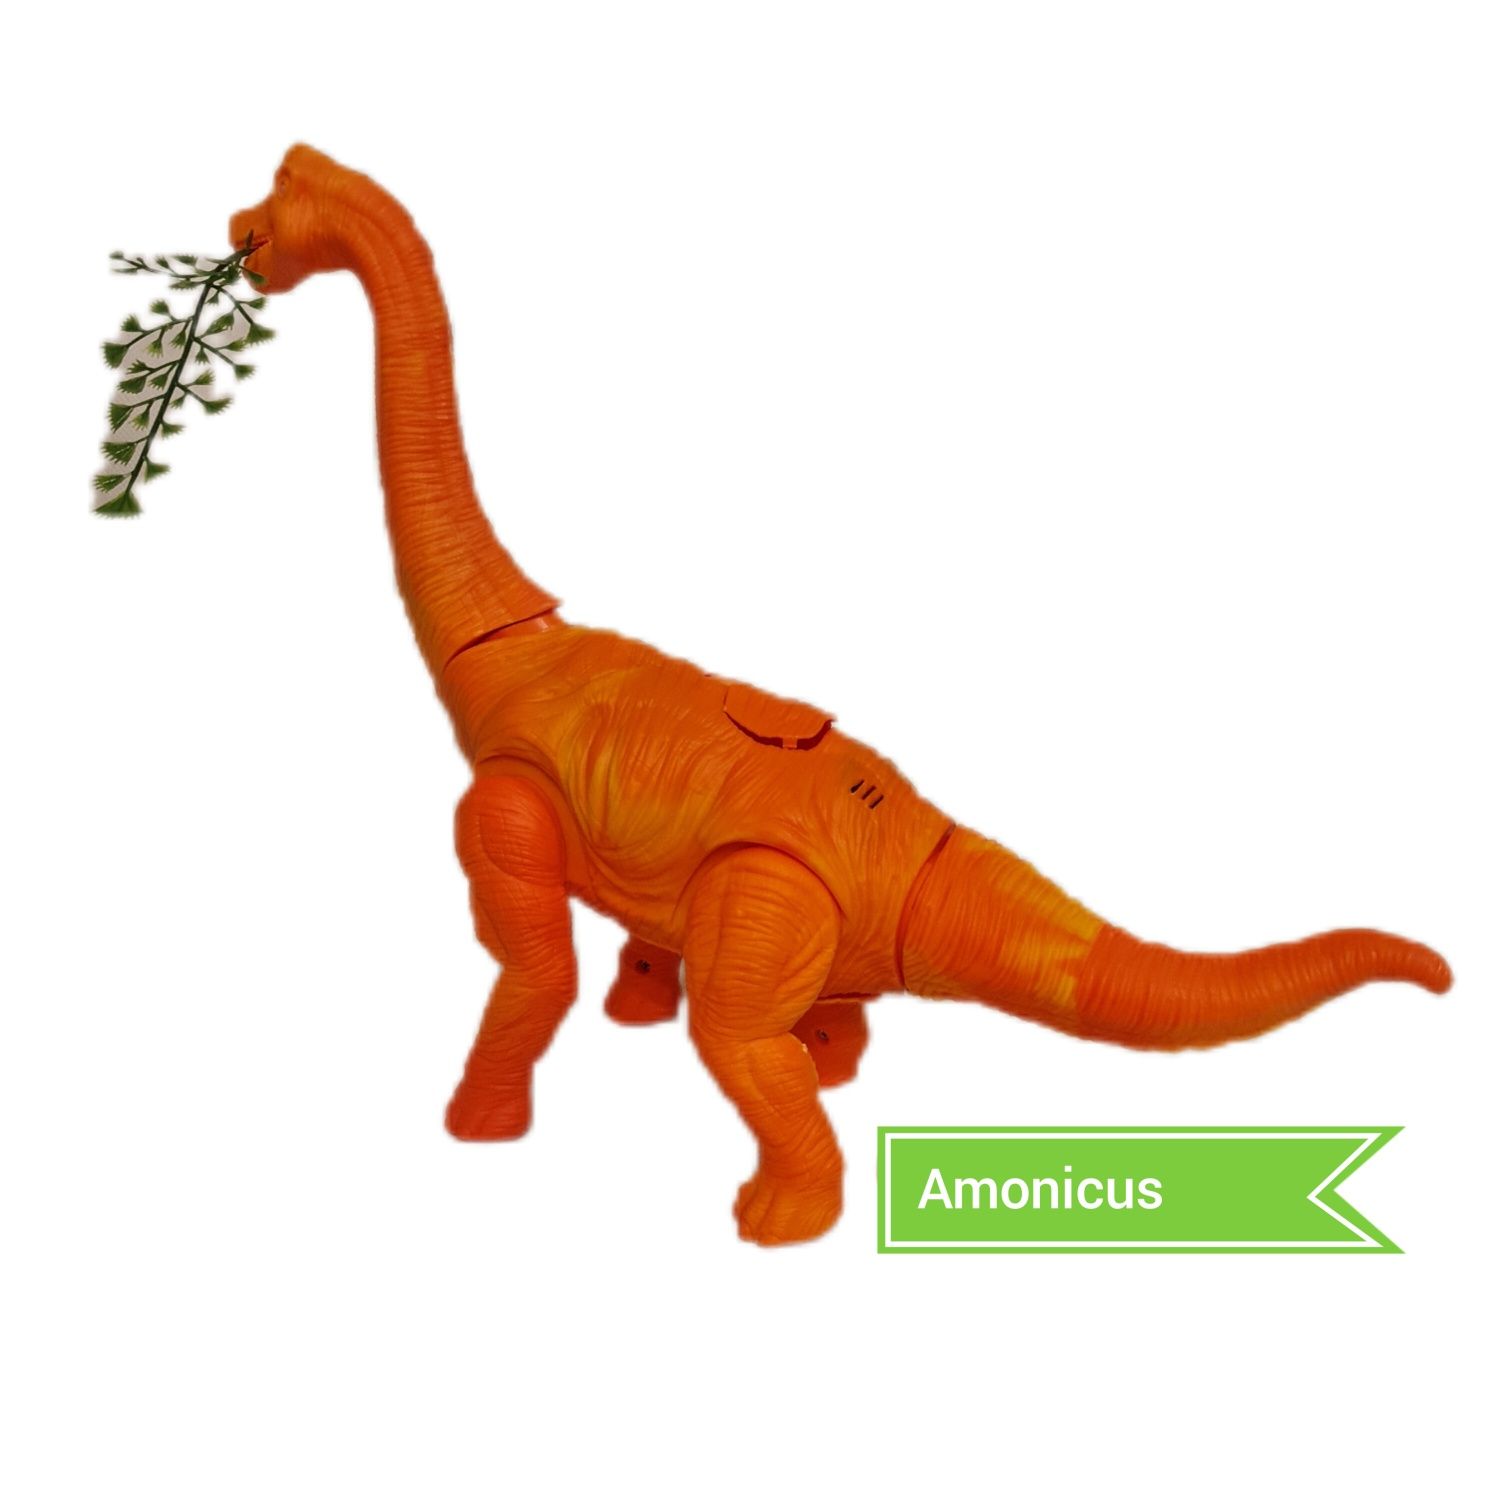 Dinozaur  - Brachiozaur znoszący jaja z projektorem